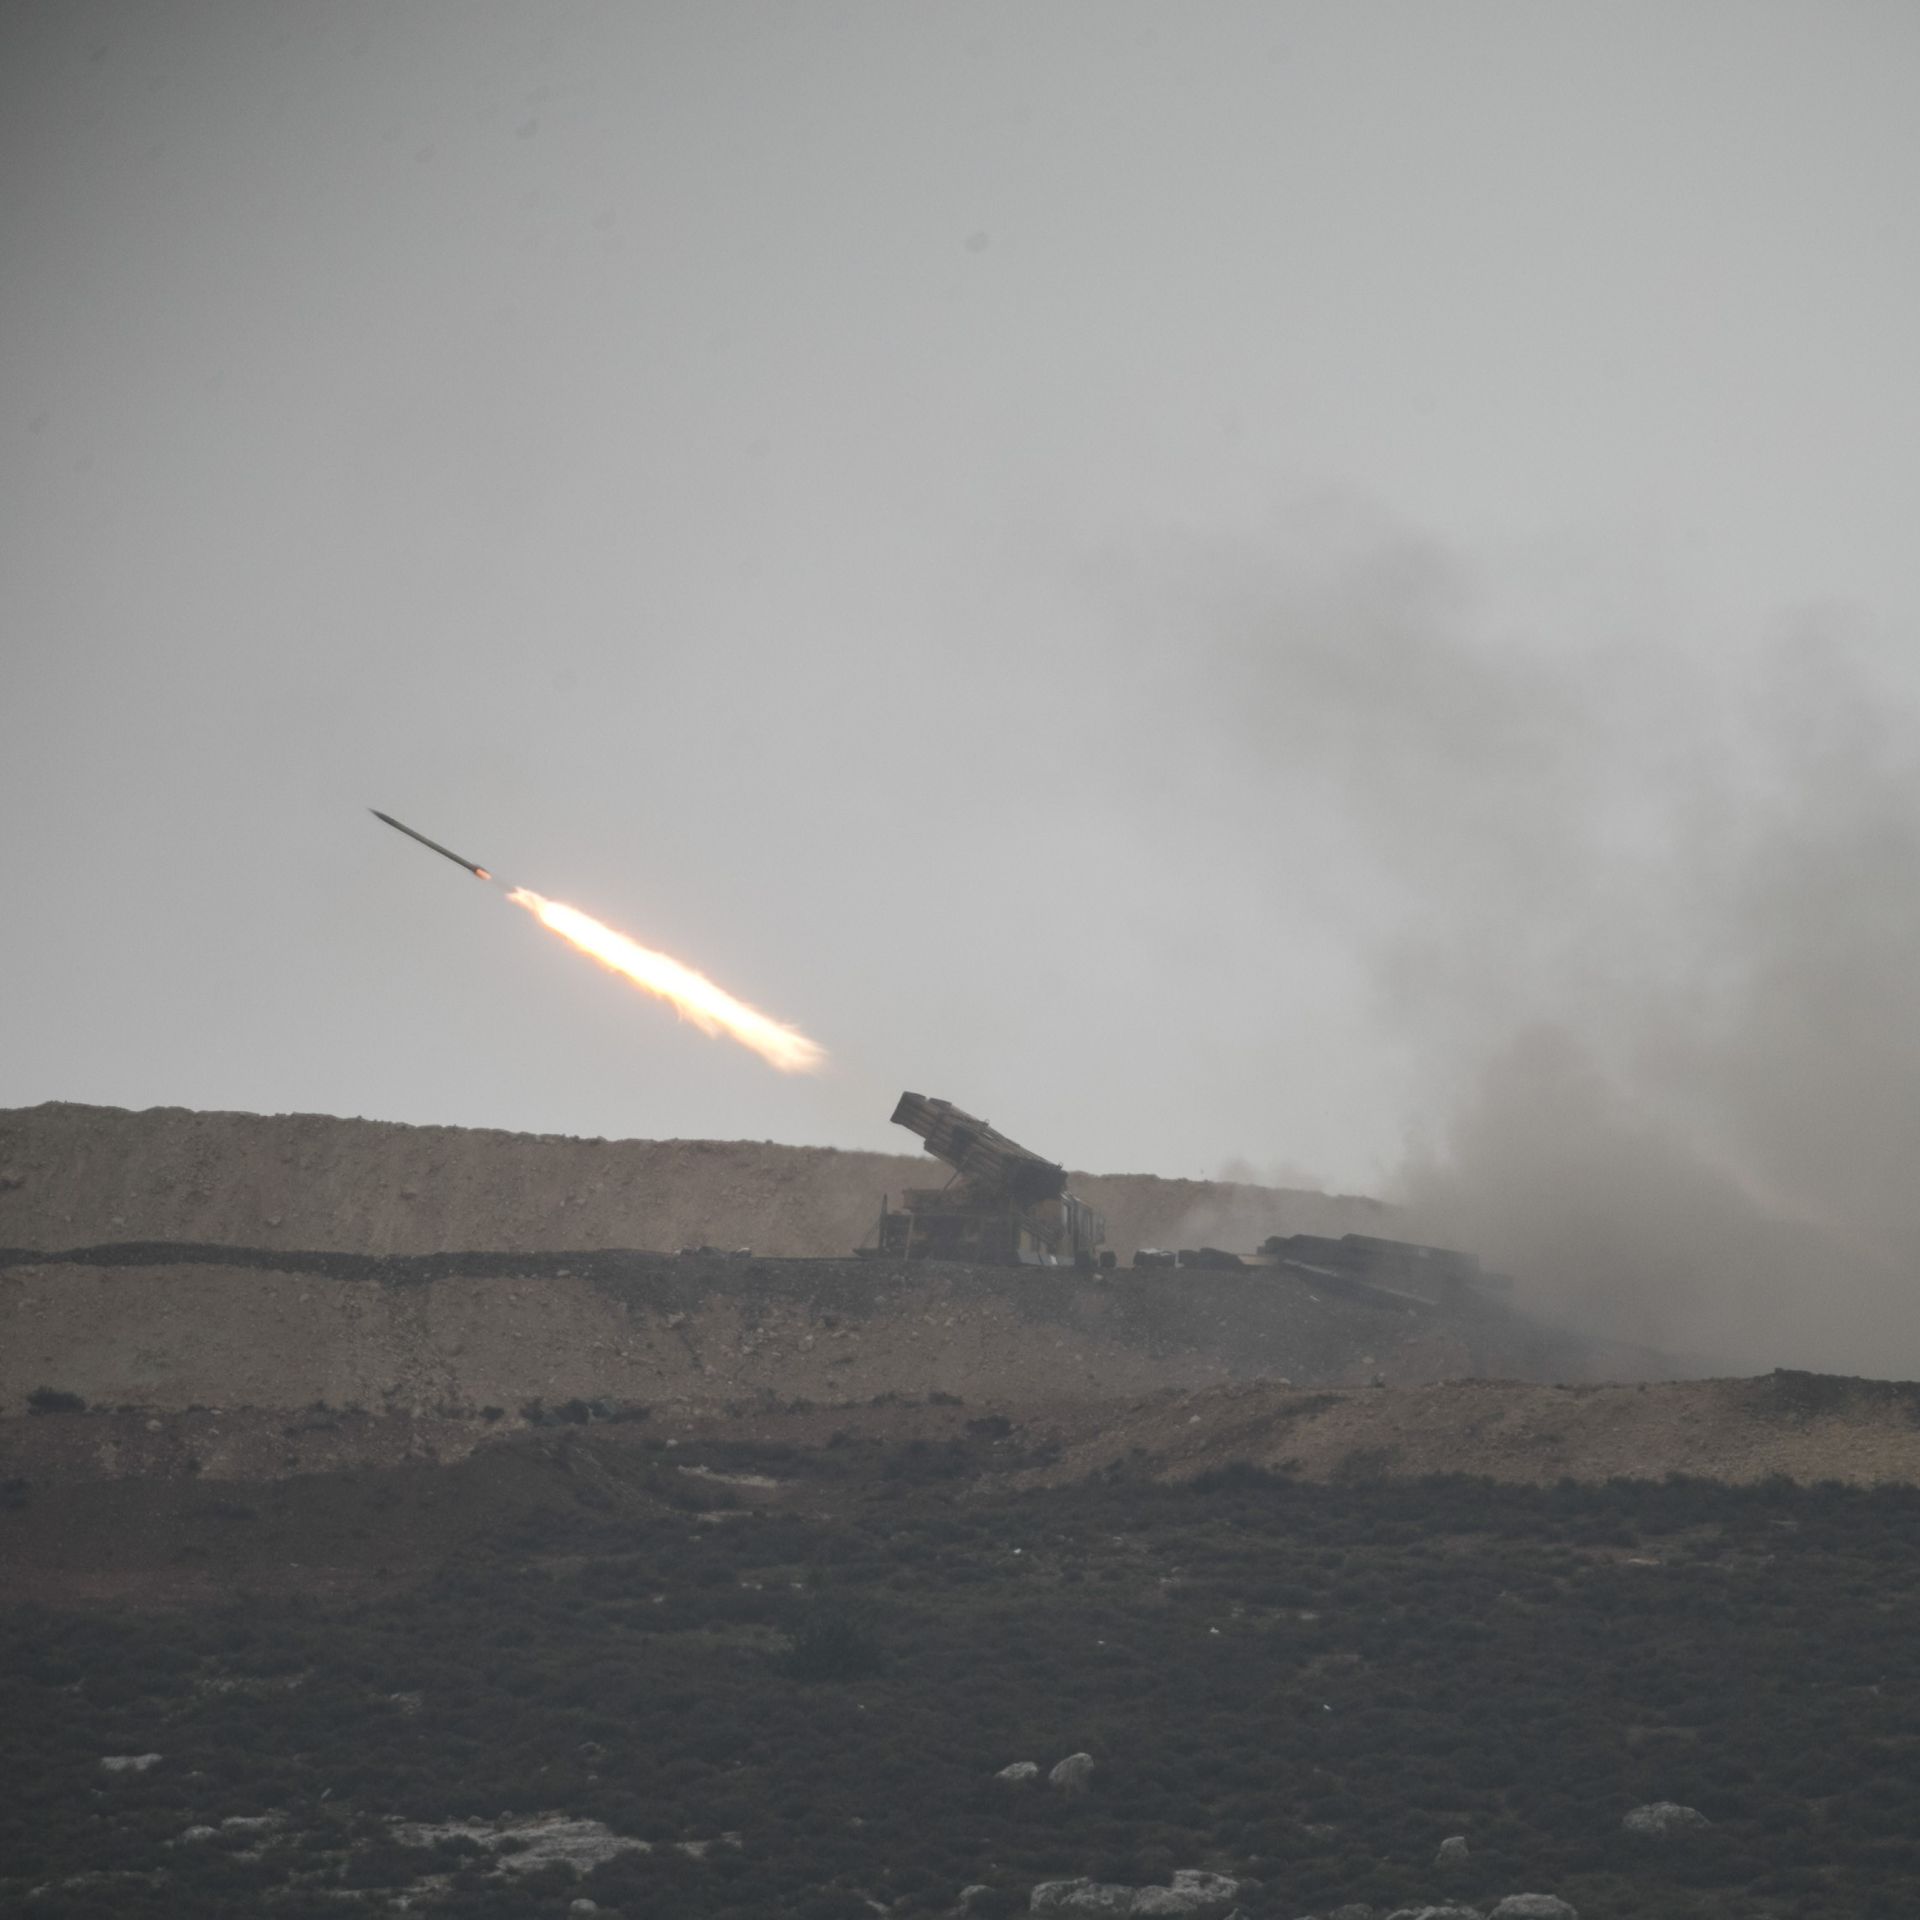 Turkish howitzer firing